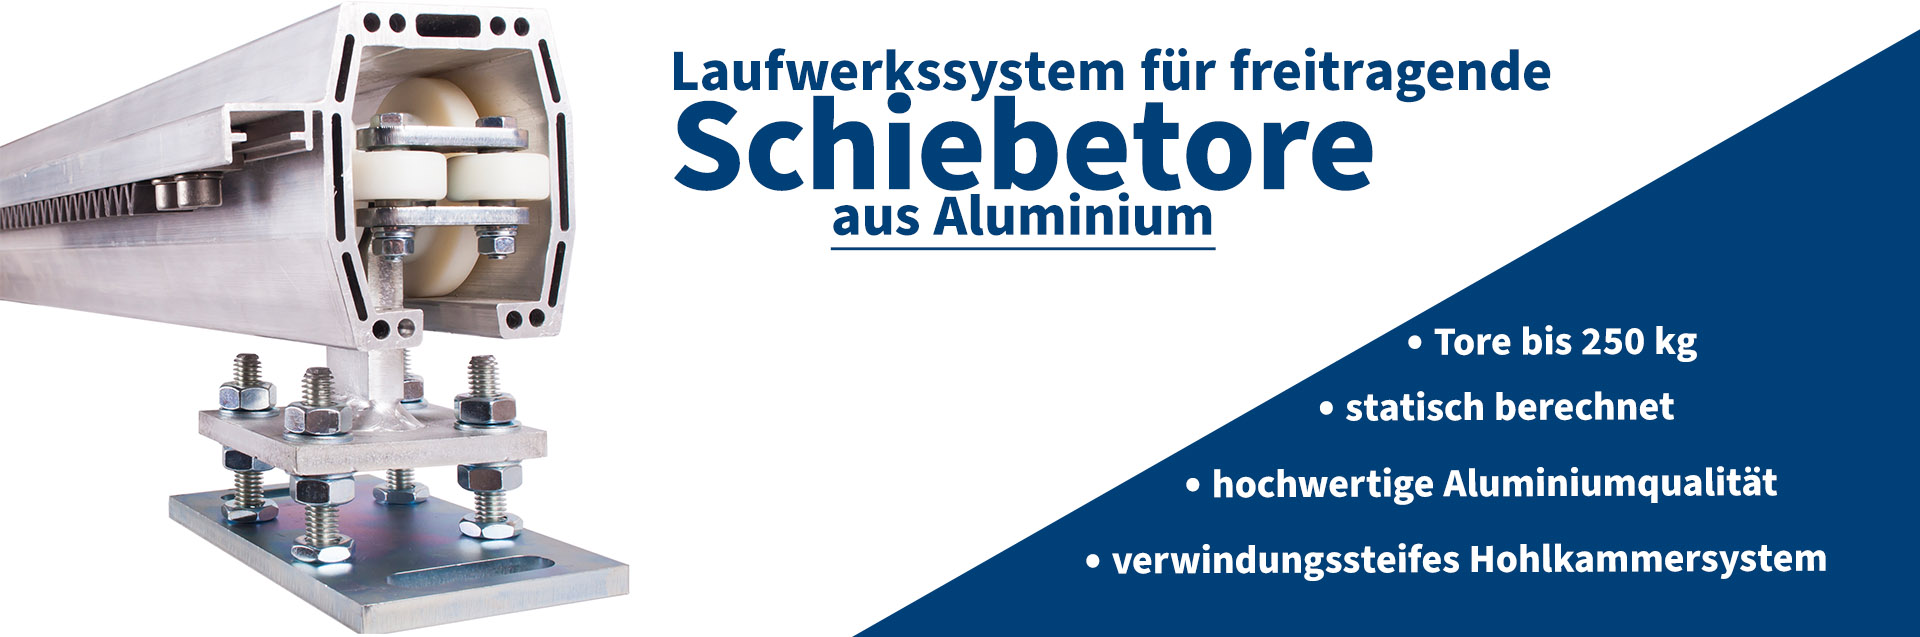 Schiebetorprofile Aluminium